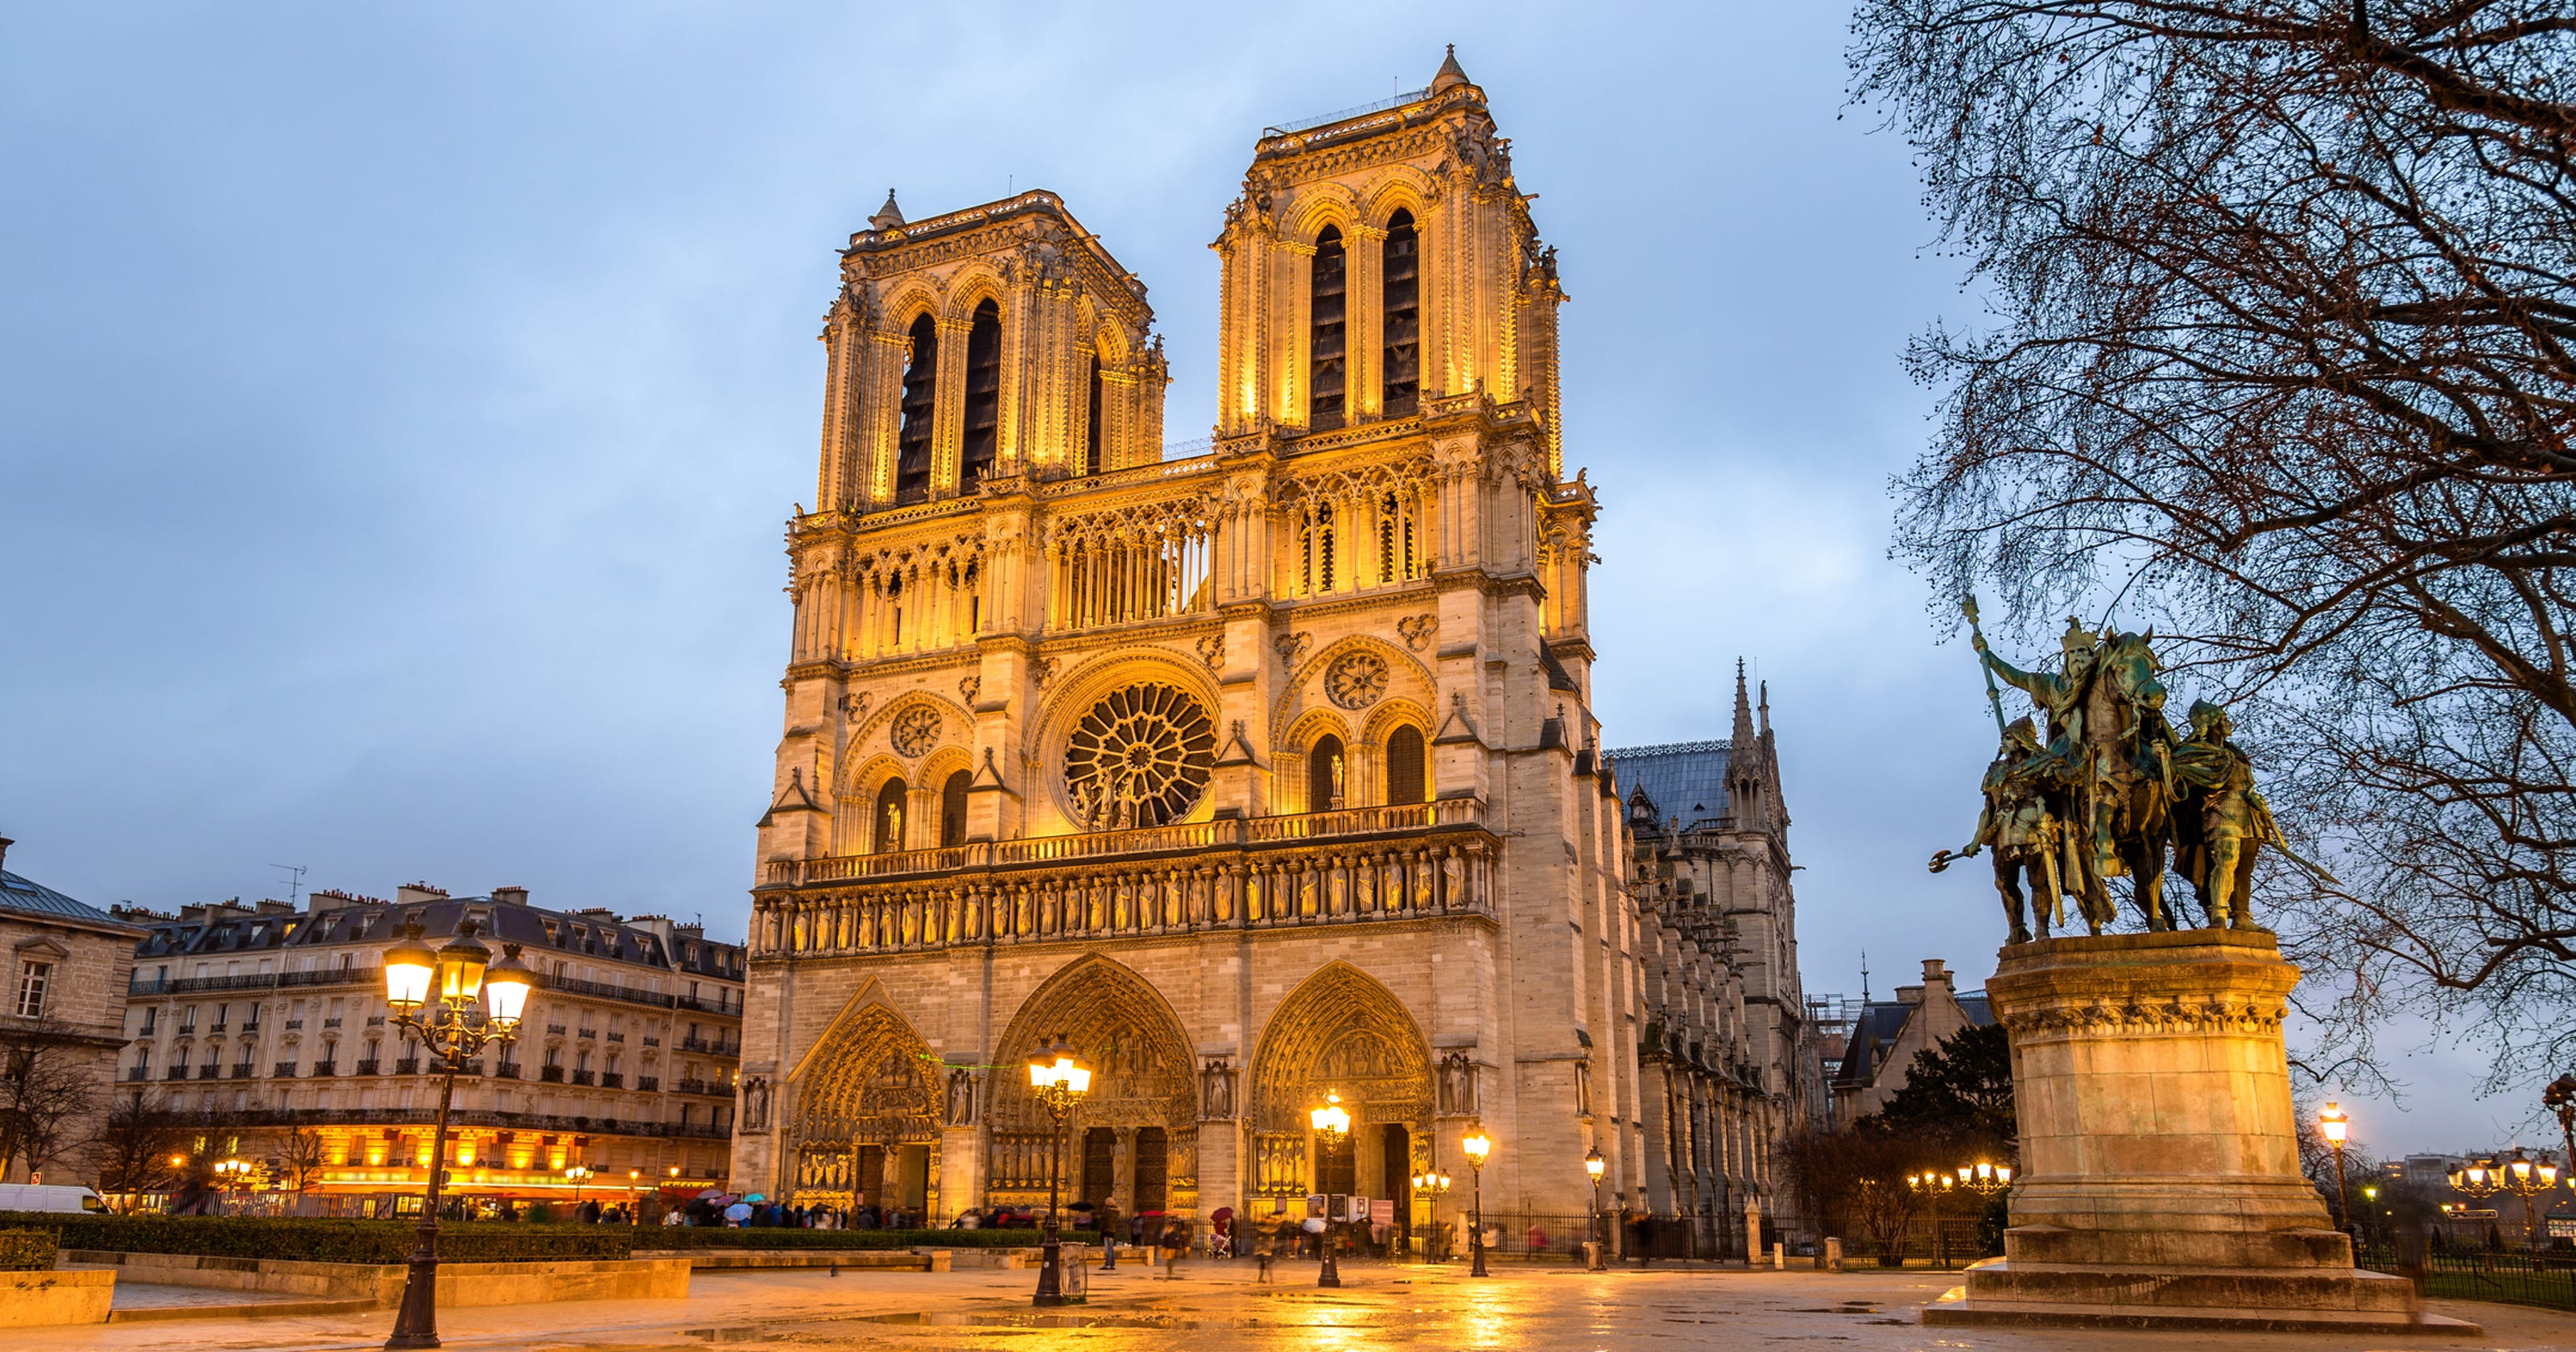 The stunning Notre Dame de Paris